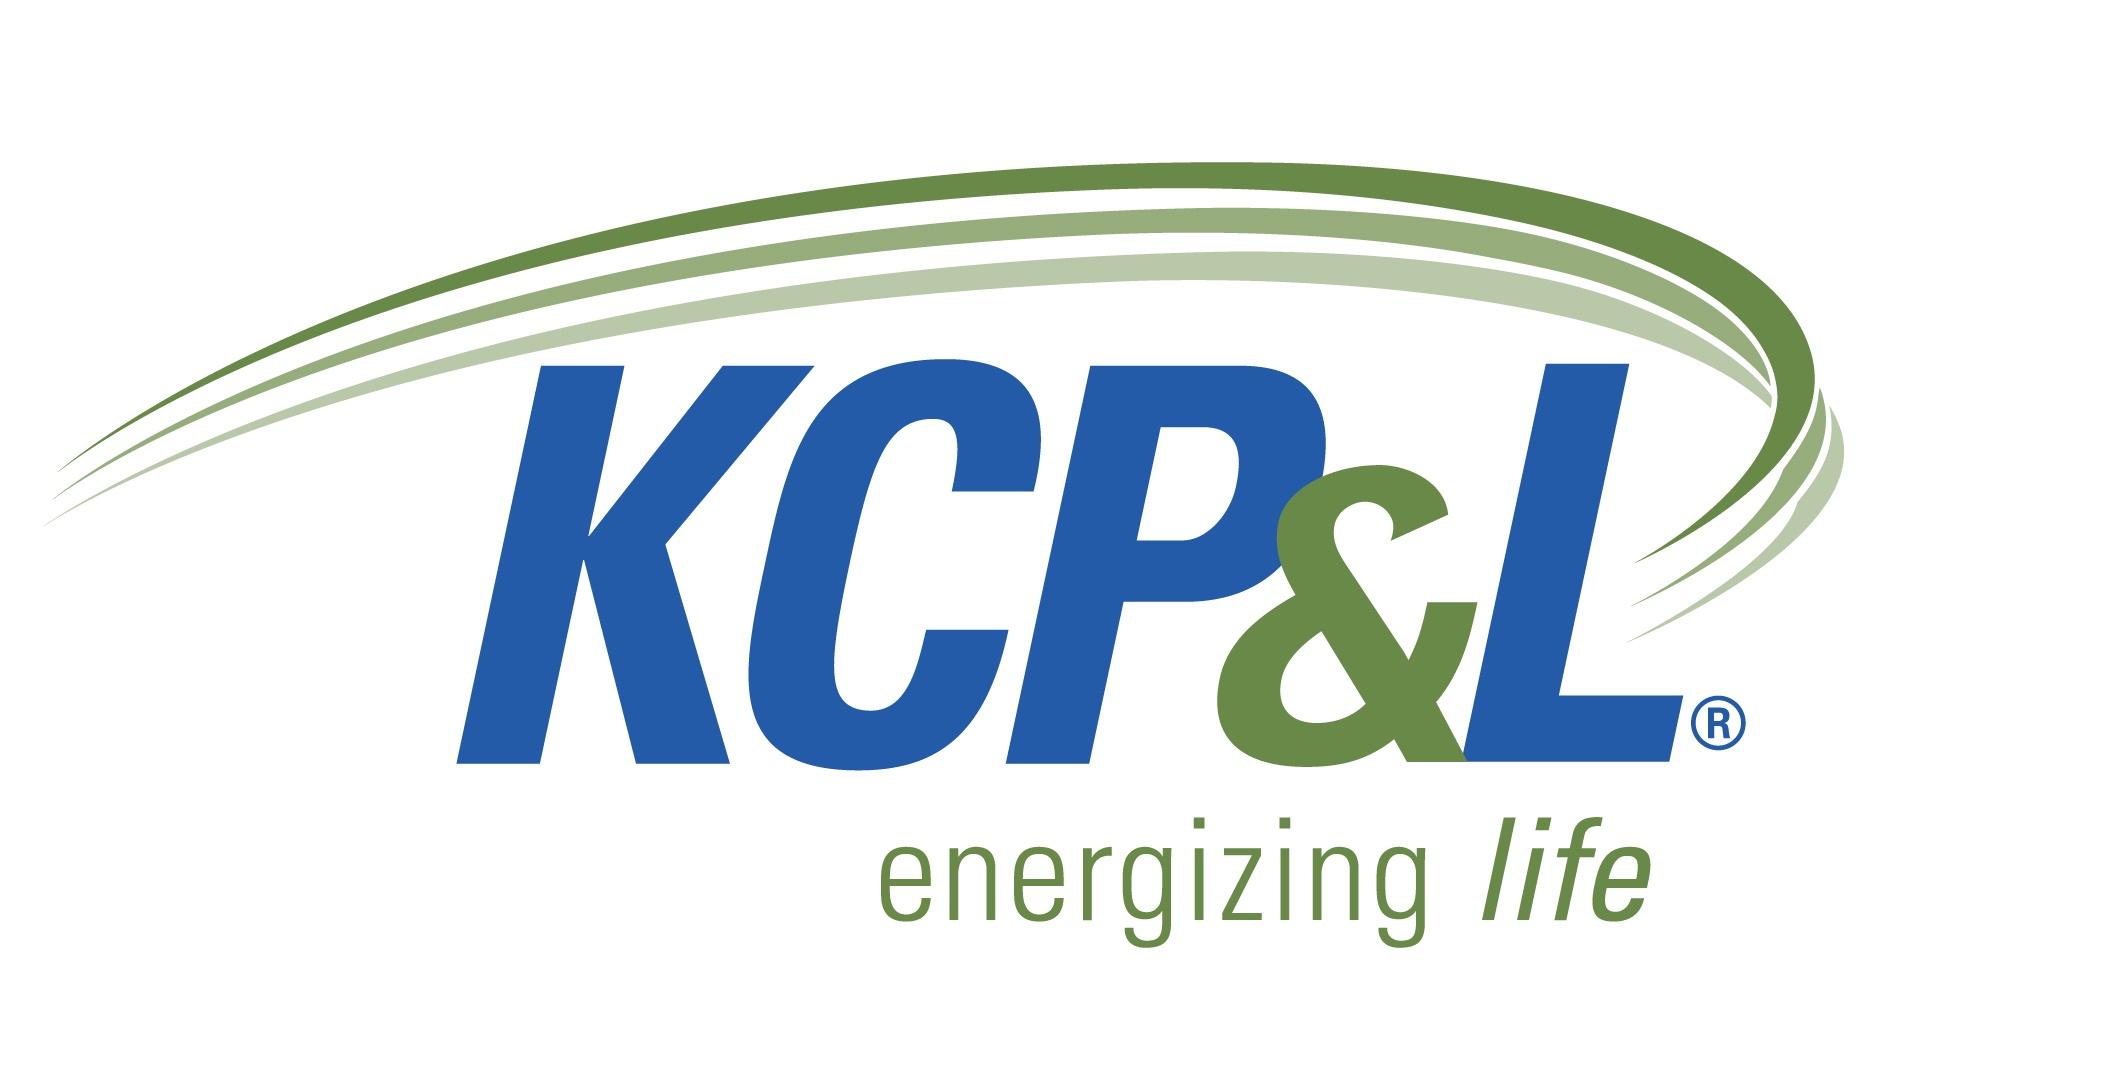 KCP&L logo